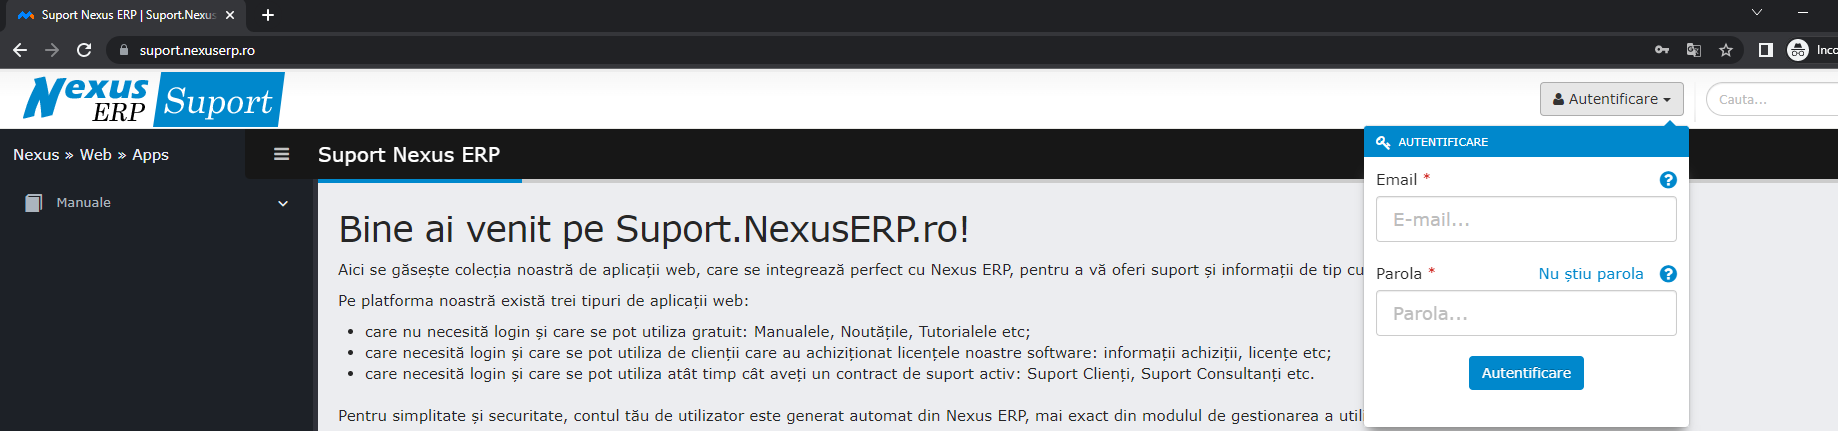 Creare-cont-suport.nexuserp.ro1